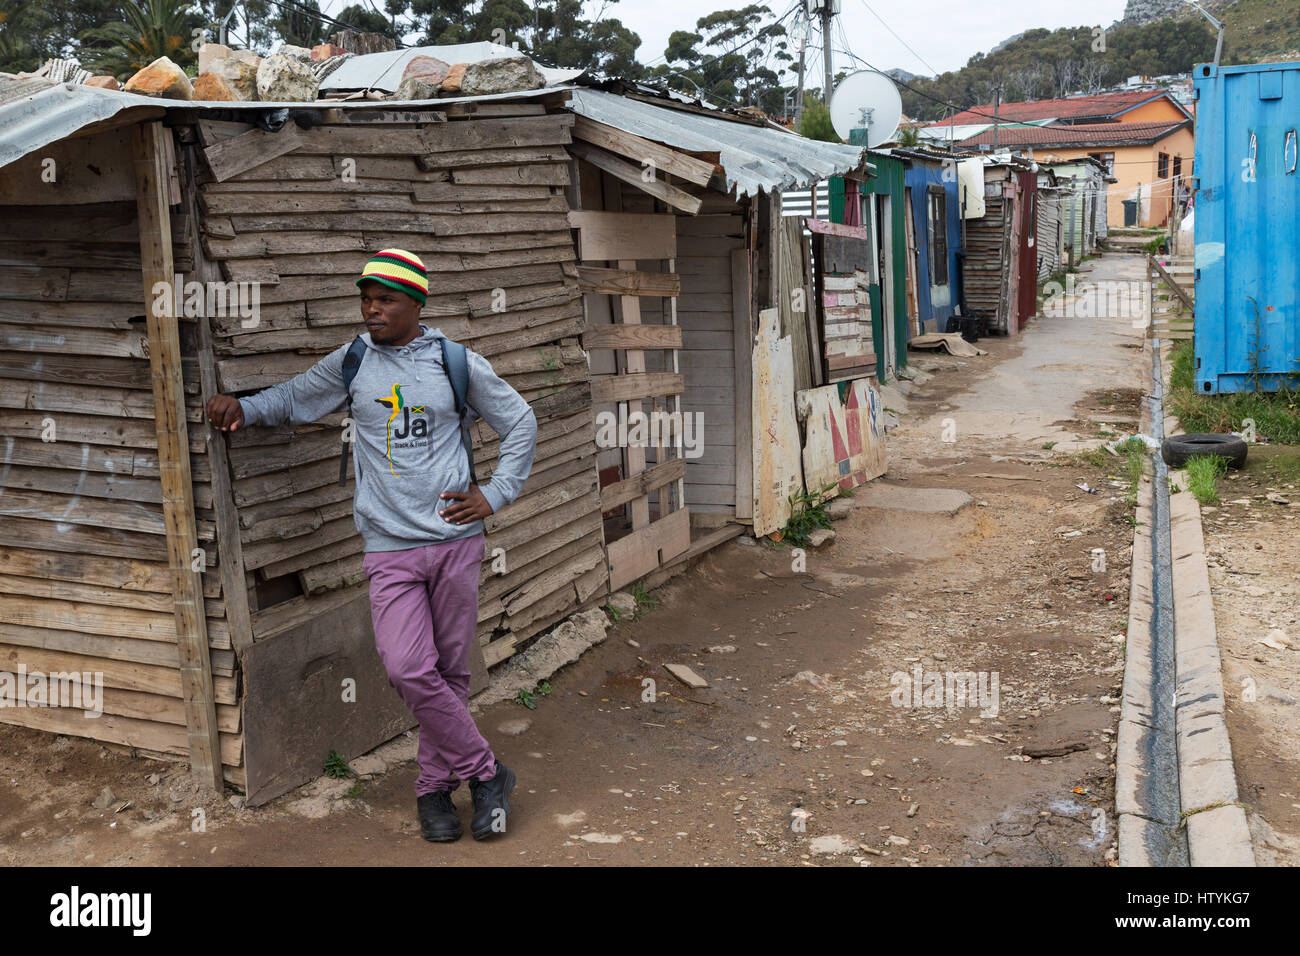 Sud Africa township - un uomo in piedi in strada, Imizamo Yethu Township, Cape Town, Sud Africa Foto Stock